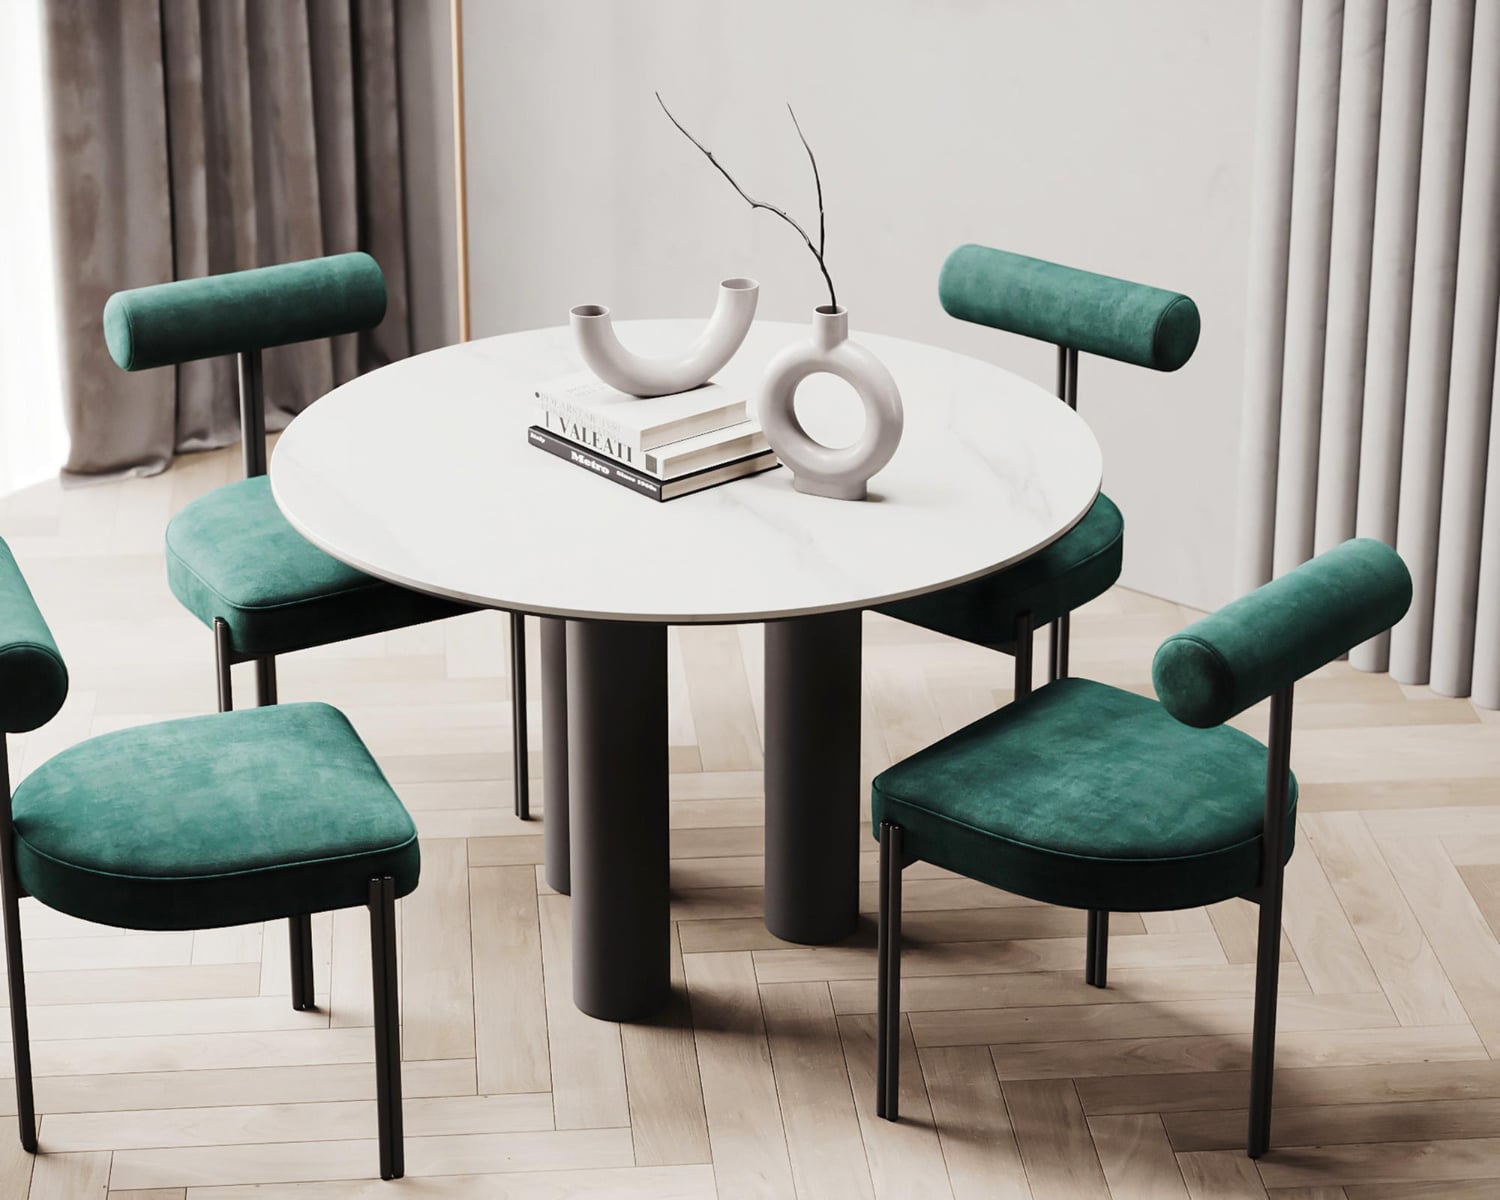 støj henvise propel Runde spiseborde | Find det rette til dit hjem | Living-concept.dk